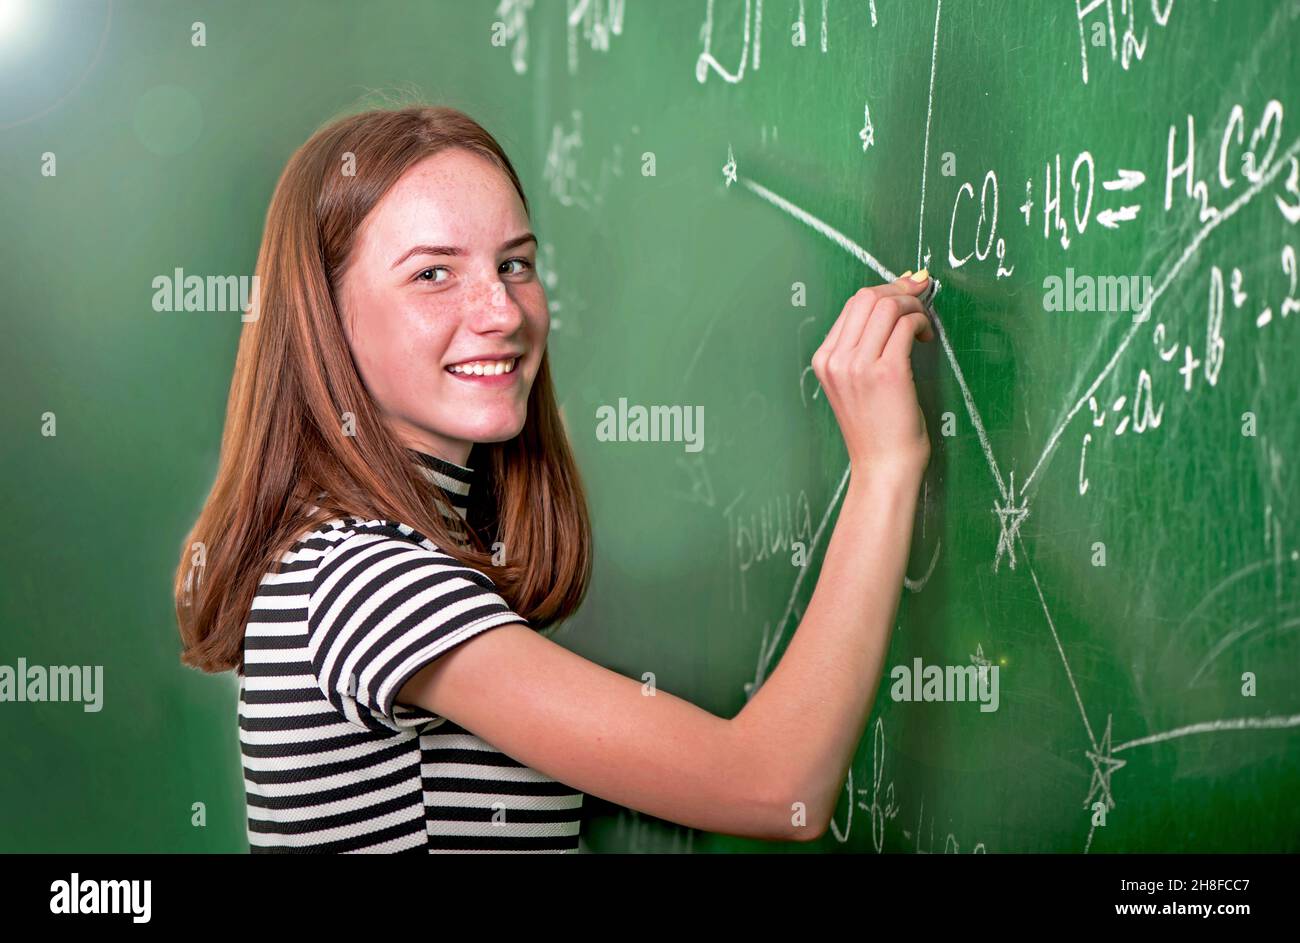 Девушка математик. Clean the blackboard. Фото девочка стоит возле доски в школе и что то понял. Prepare 3 teachers